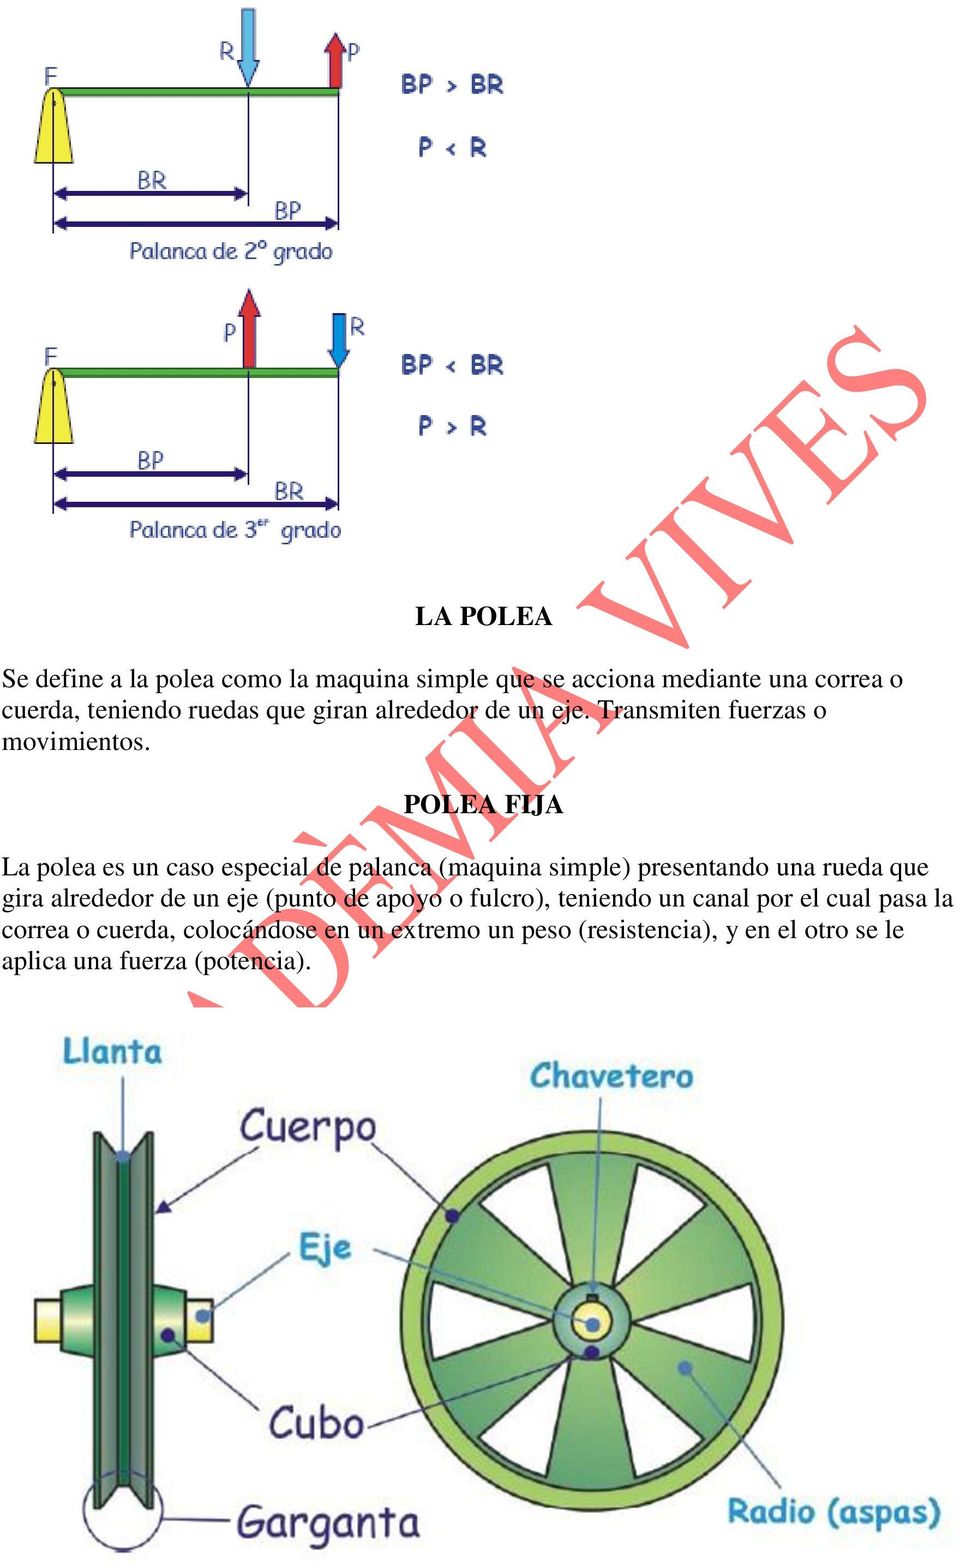 POLEA FIJA La polea es un caso especial de palanca (maquina simple) presentando una rueda que gira alrededor de un eje